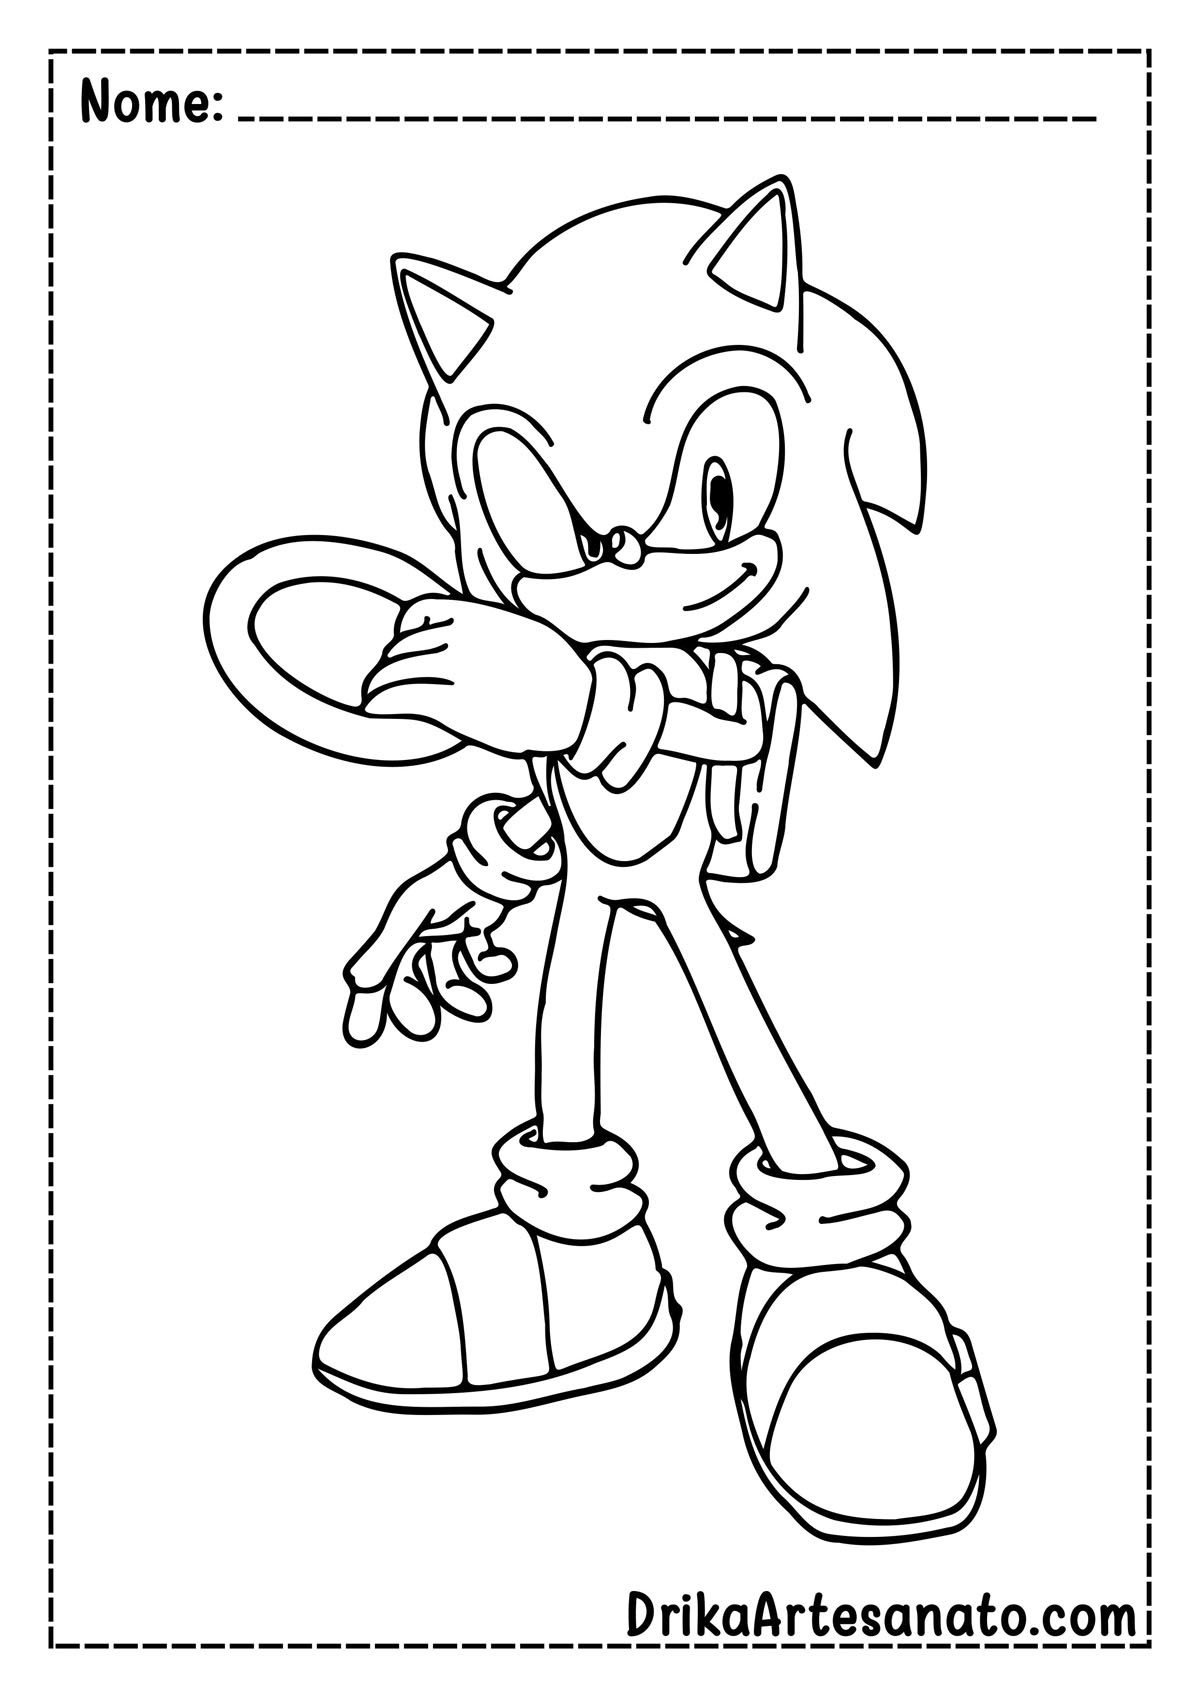 Desenho do Sonic 2 para Imprimir